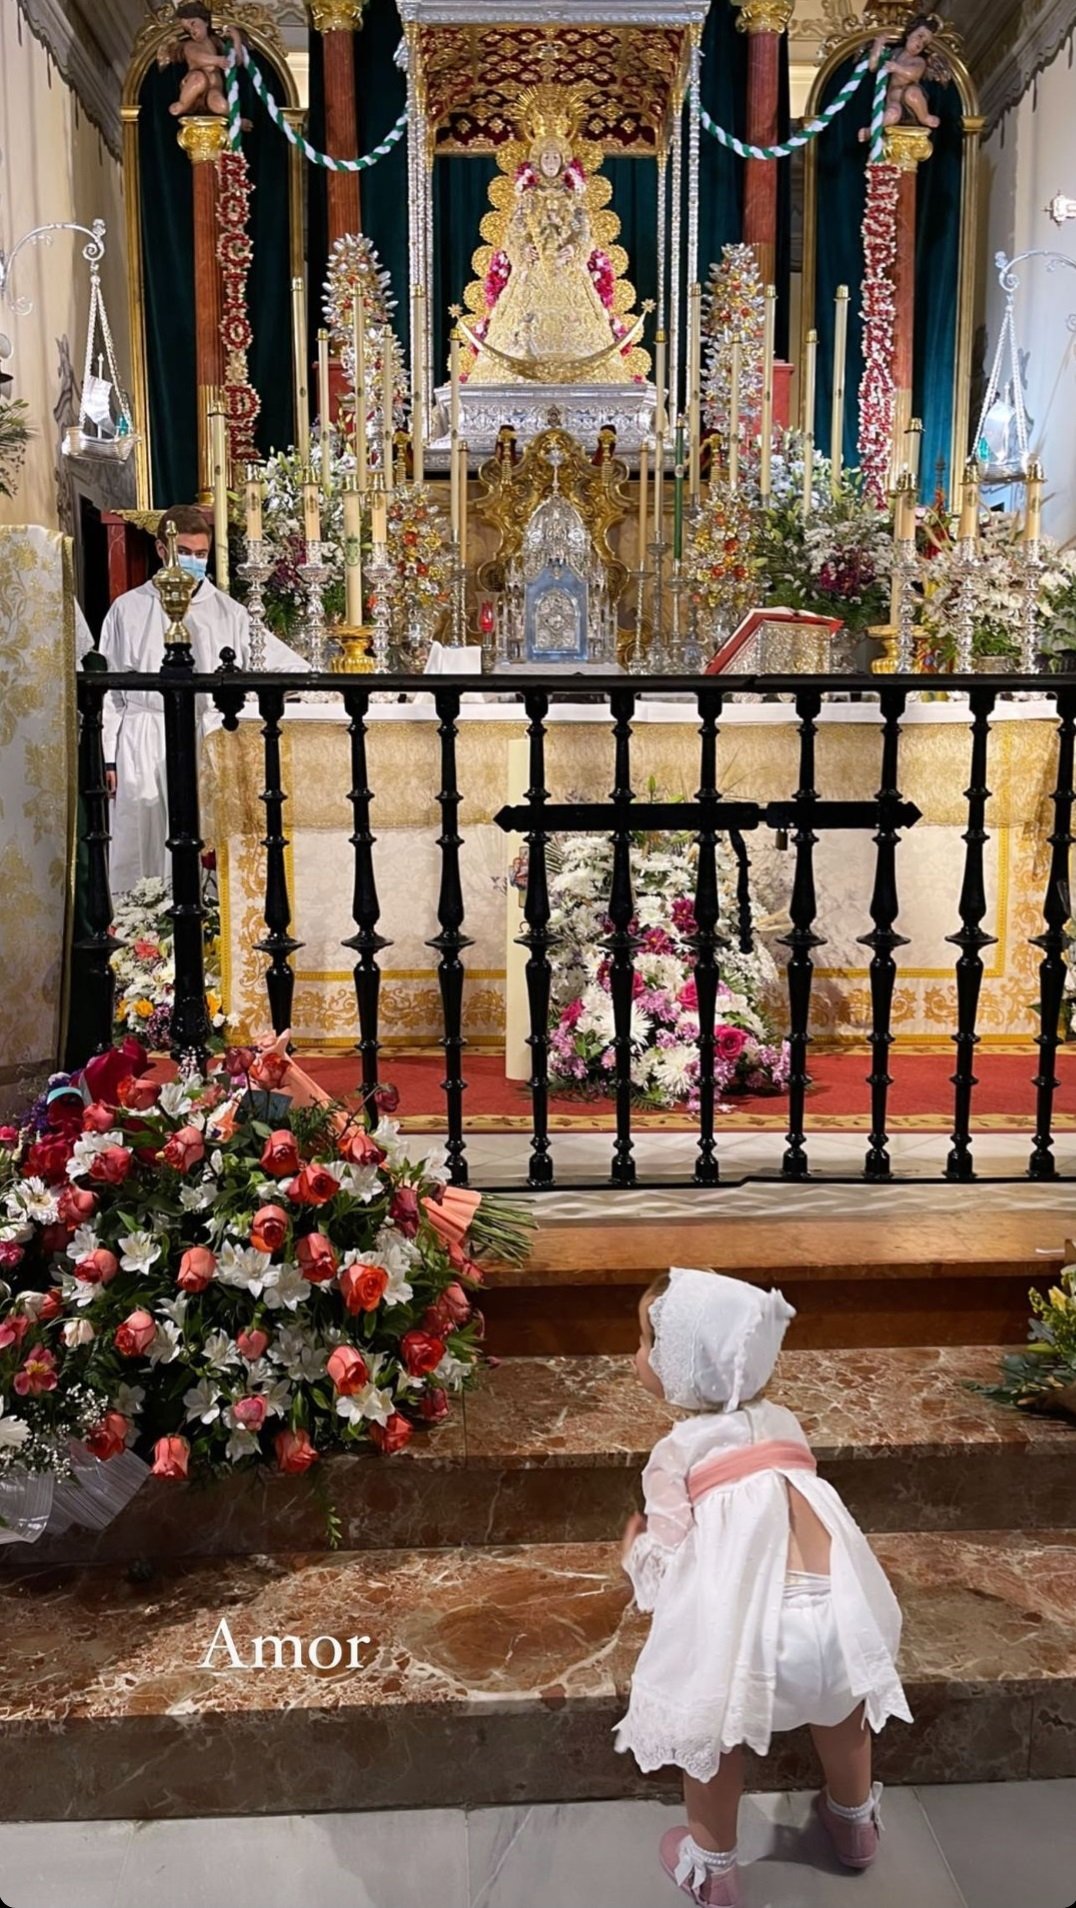 Lola frente al altar de la Virgen del Rocío. | Foto: Captura de pantalla de Instagram/tmoreno73